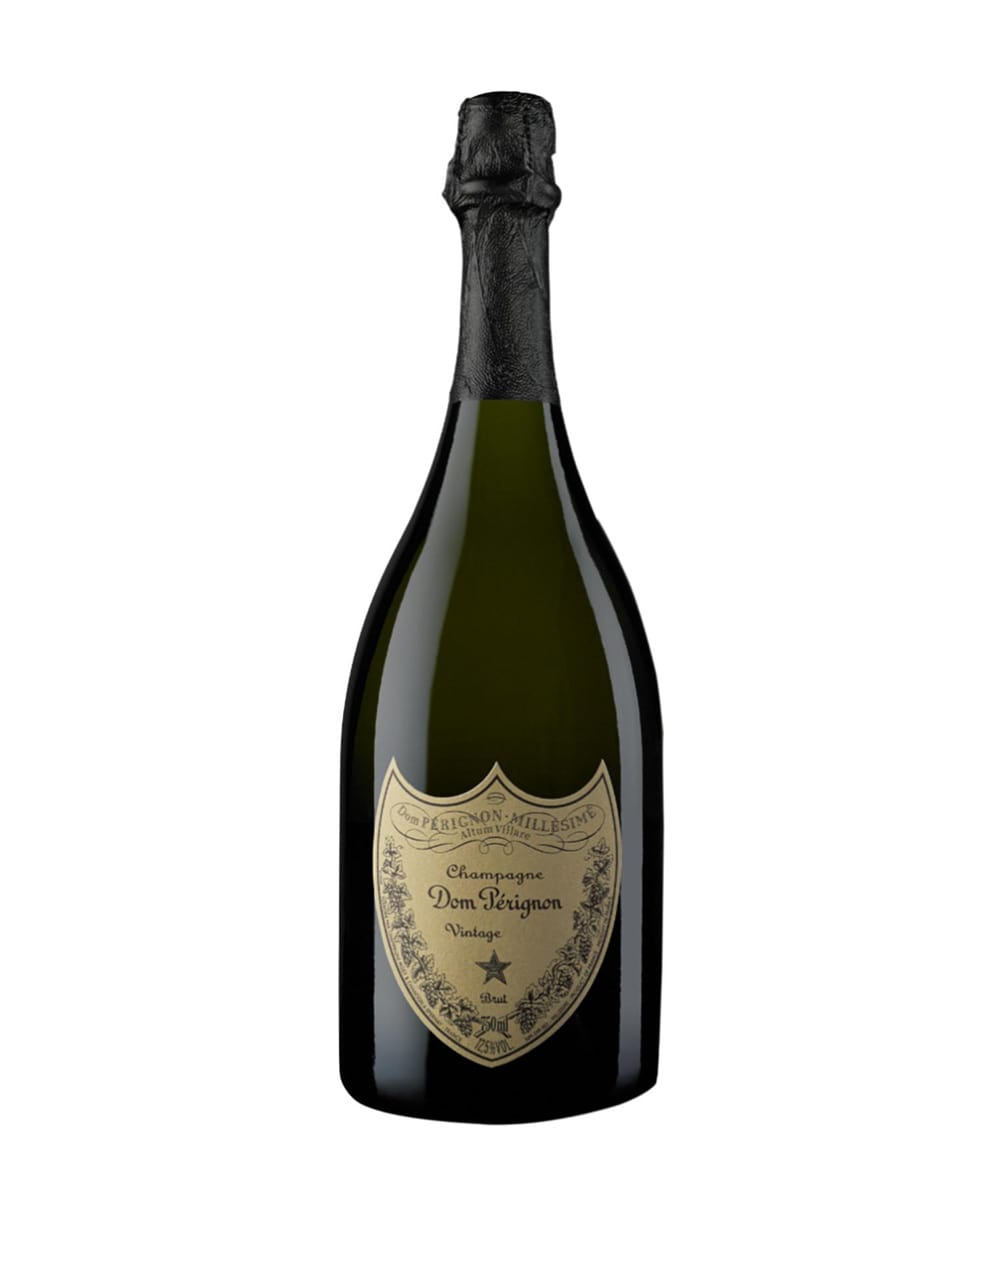 Moet Chandon Rose Imperial Brut Champagne 1.5L (Engraved Bottle)